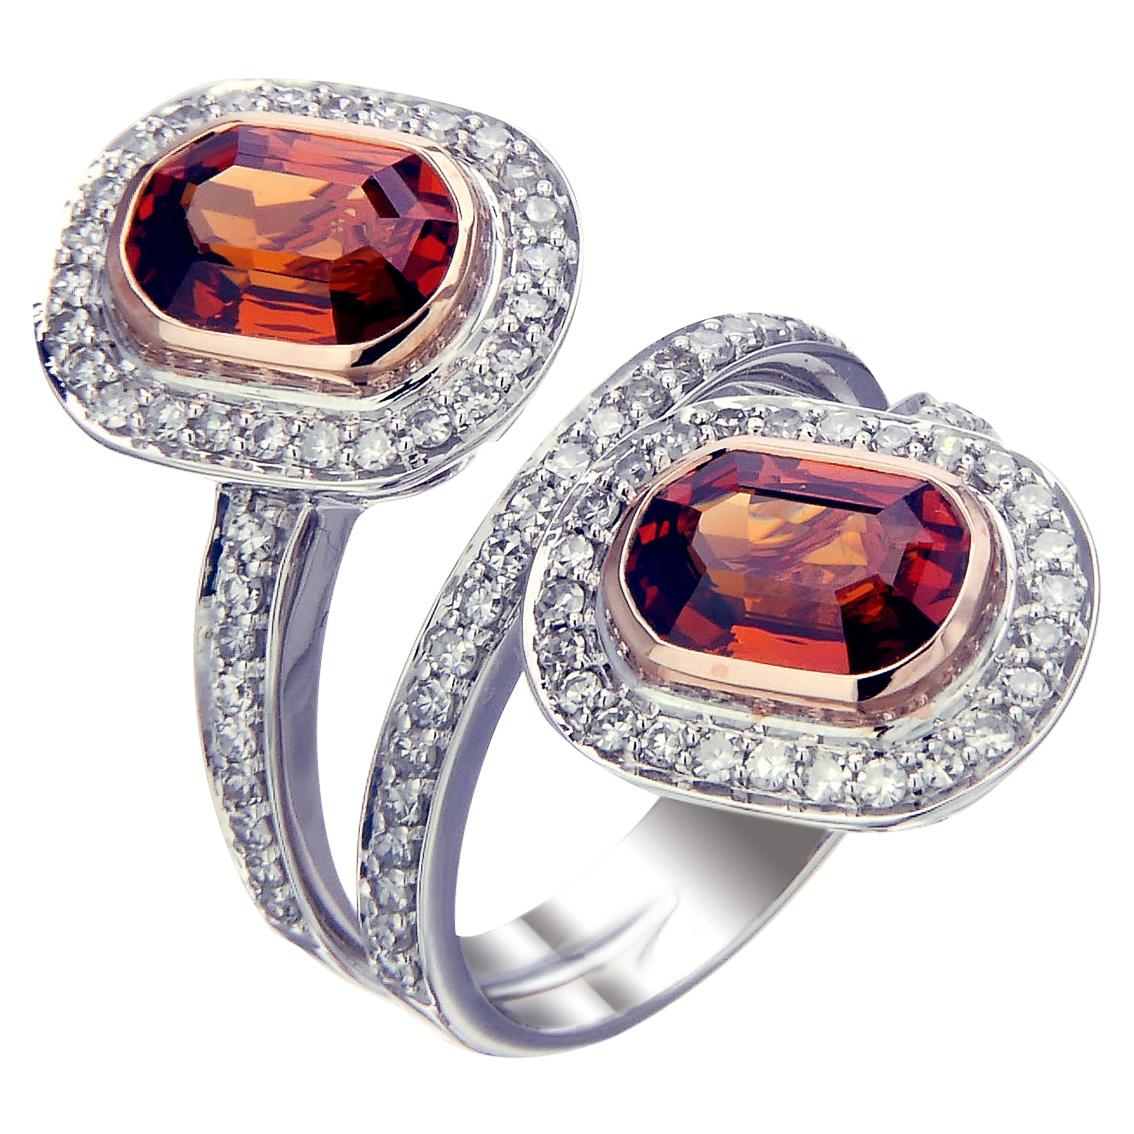 Zorab Creation Twin Infernos 4.57 Carat Spessartite Garnet Ring For Sale